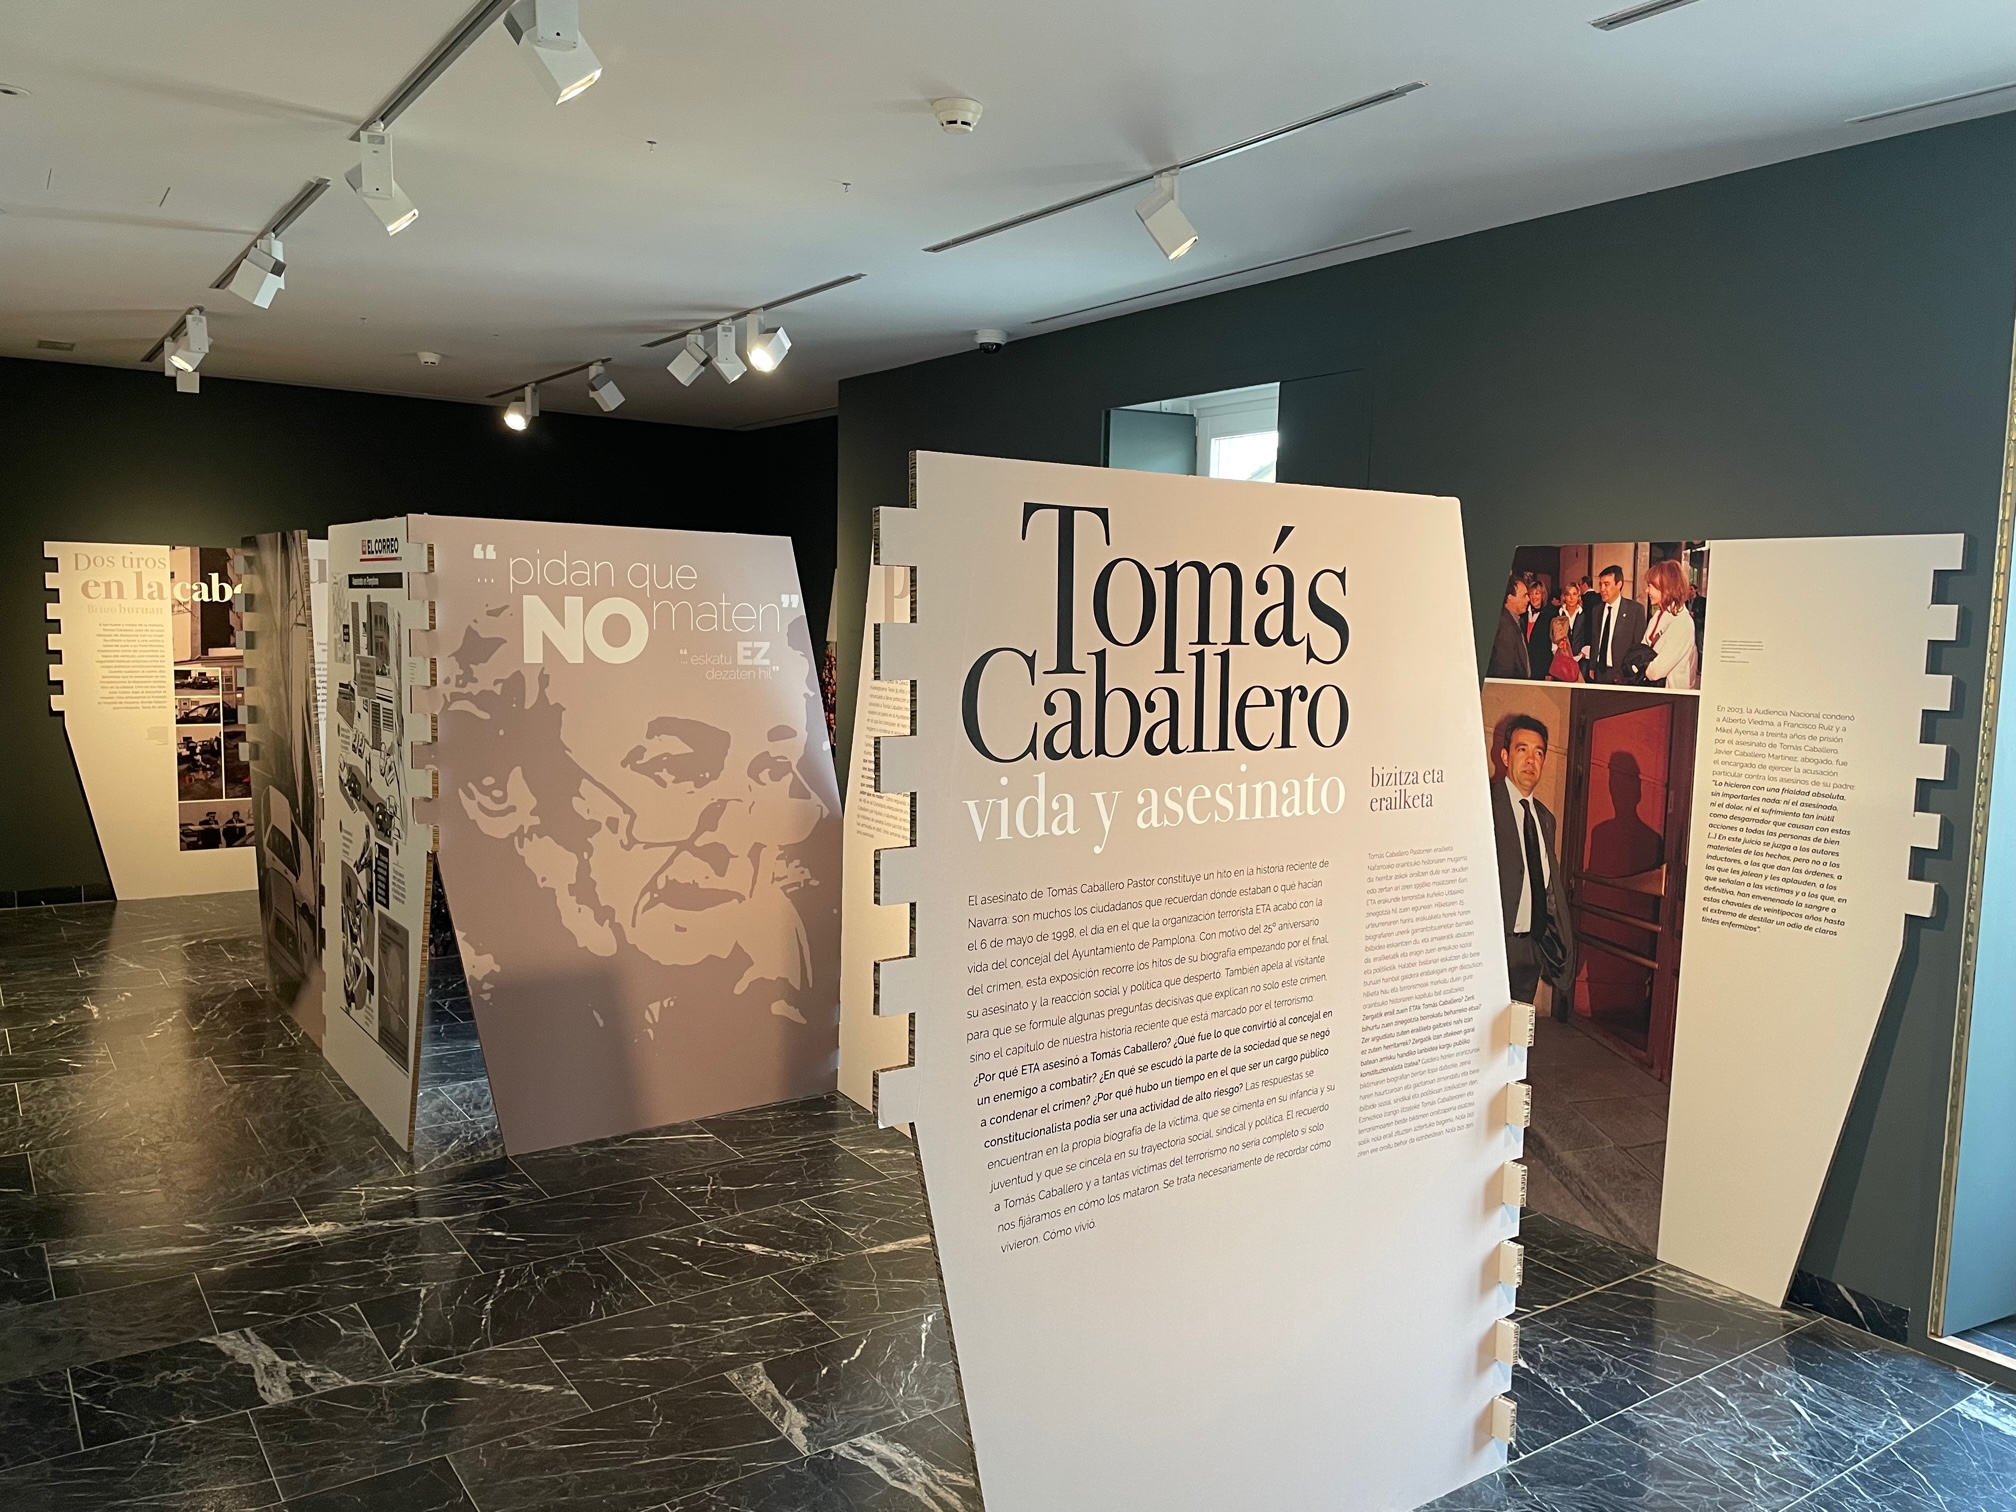 La Exposición “Tomás Caballero. Vida Y Asesinato” Hasta El 7 De Enero En El Memorial